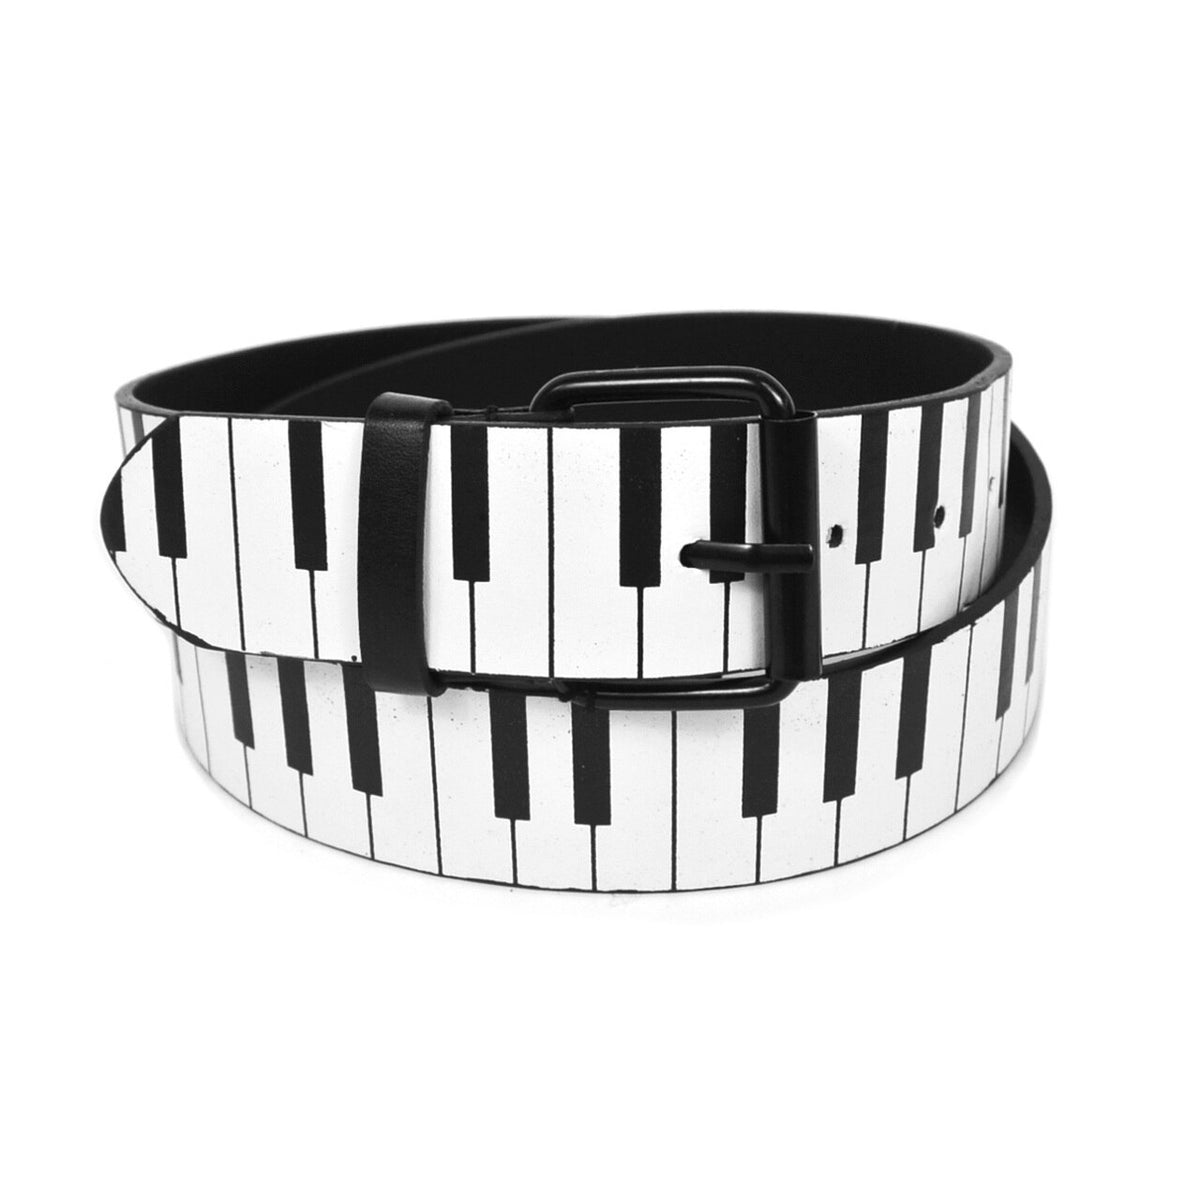 Piano Keys Belt